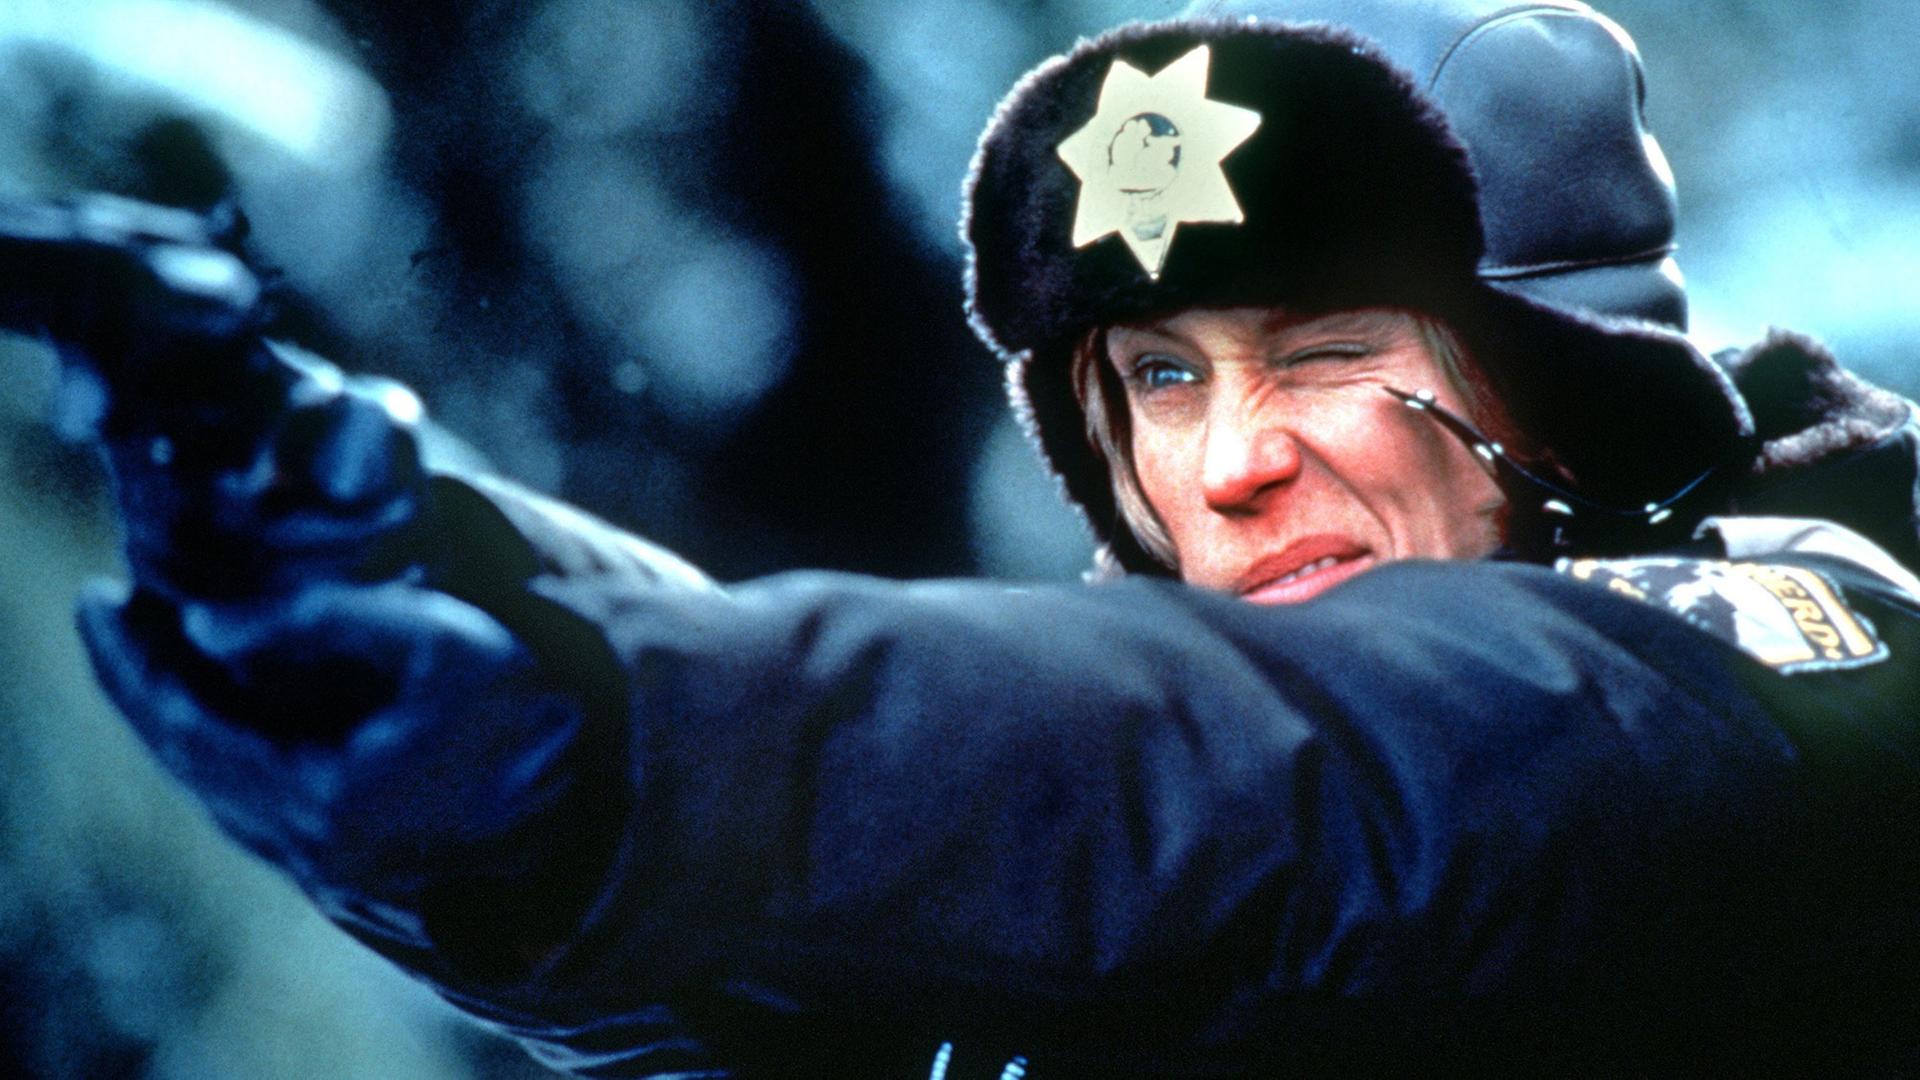 Frances Mc Dormand in einer Szene aus dem Kinofilm "Fargo" von Joel und Ethan Coen